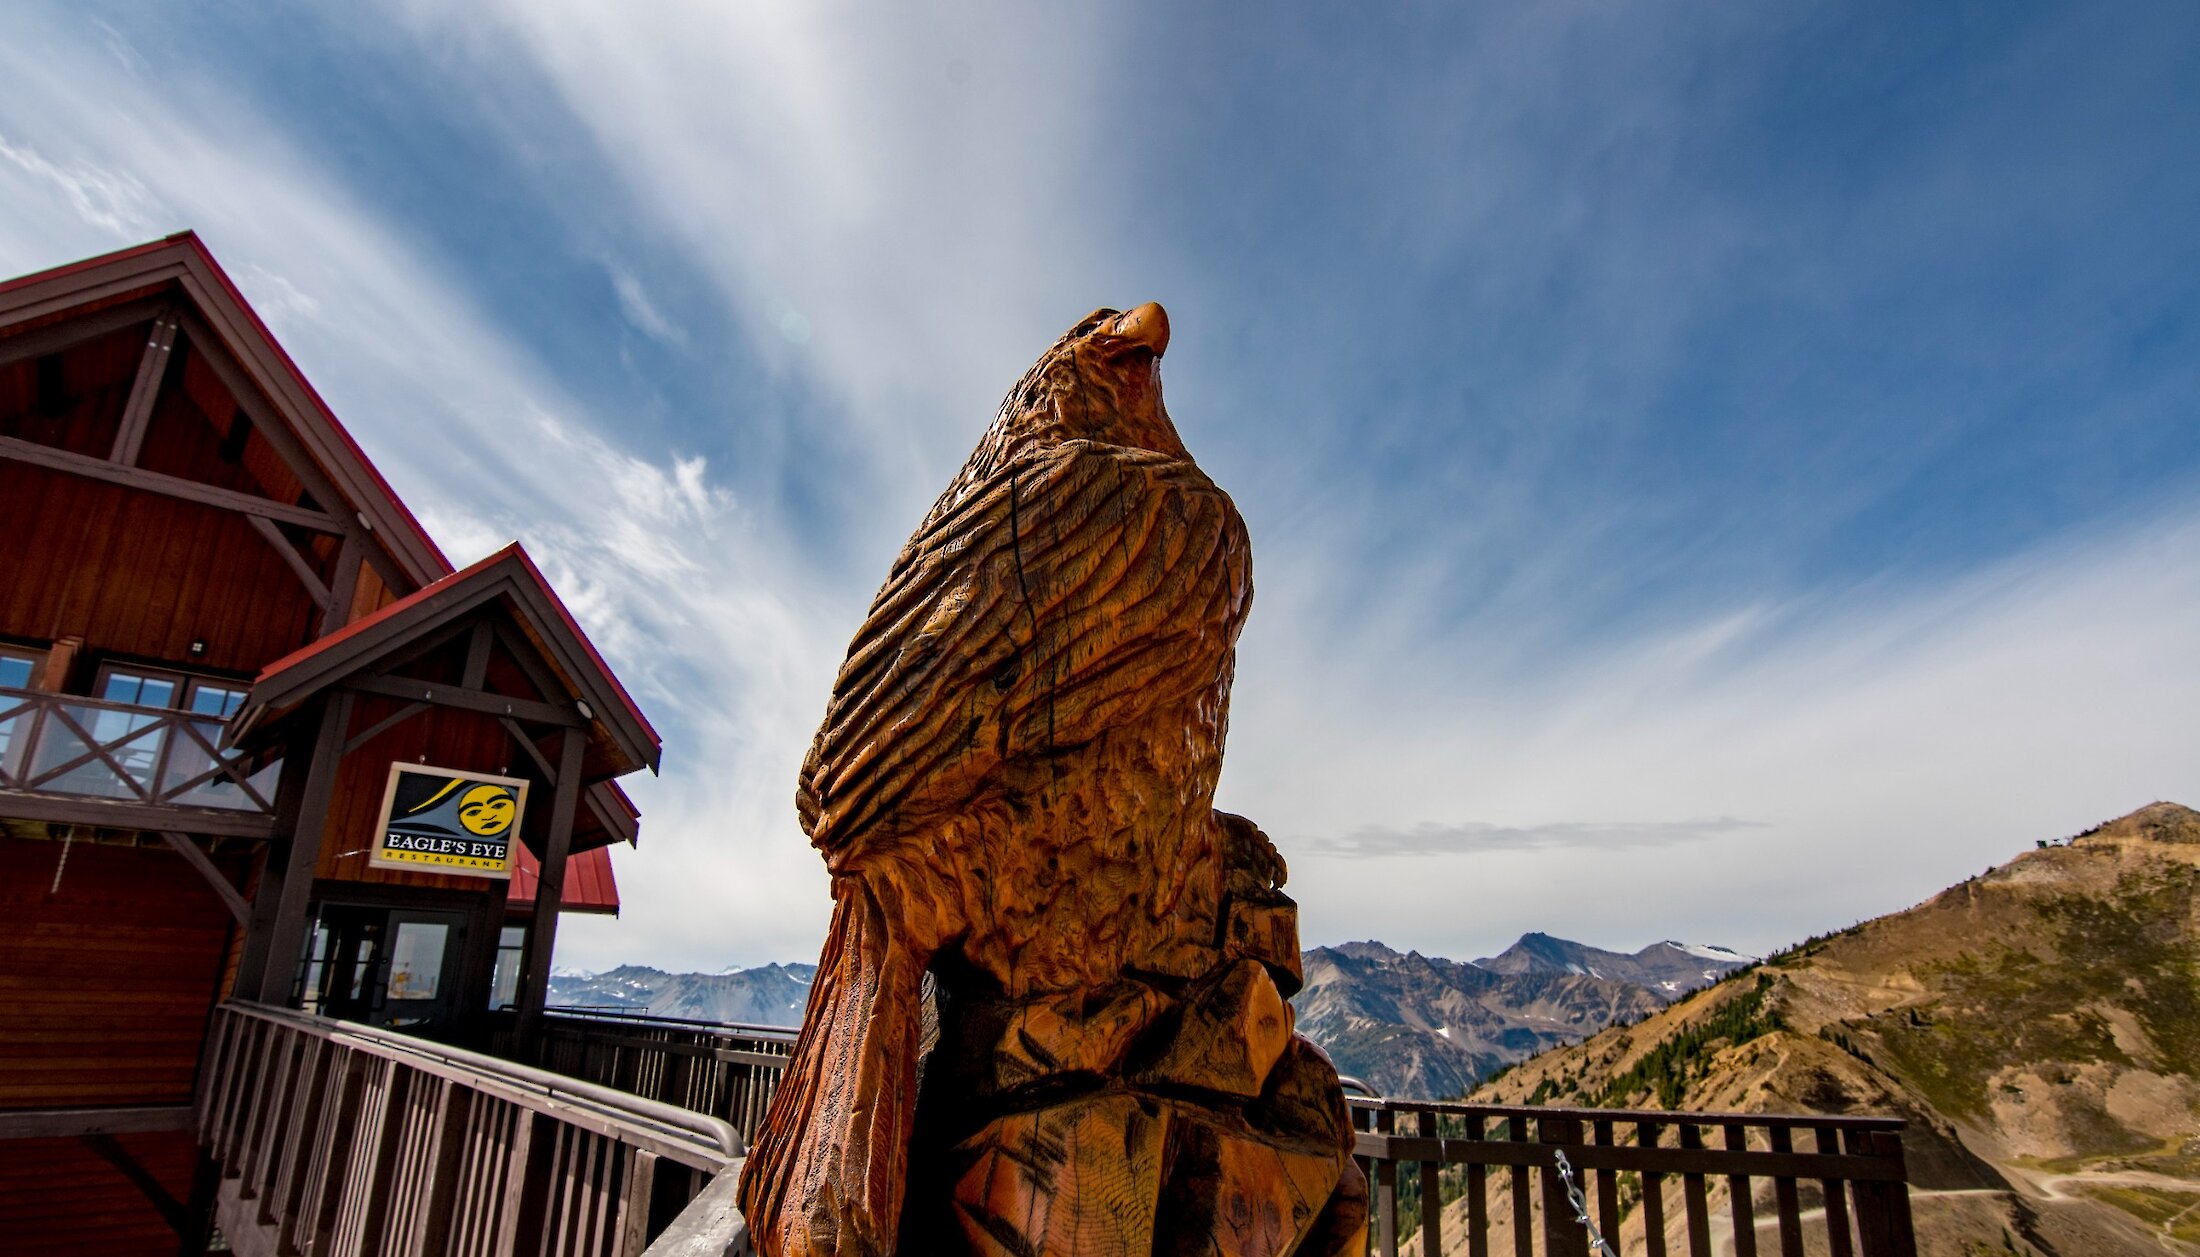 Eagle Eye Restaurant at Kicking Horse Mountain Resort